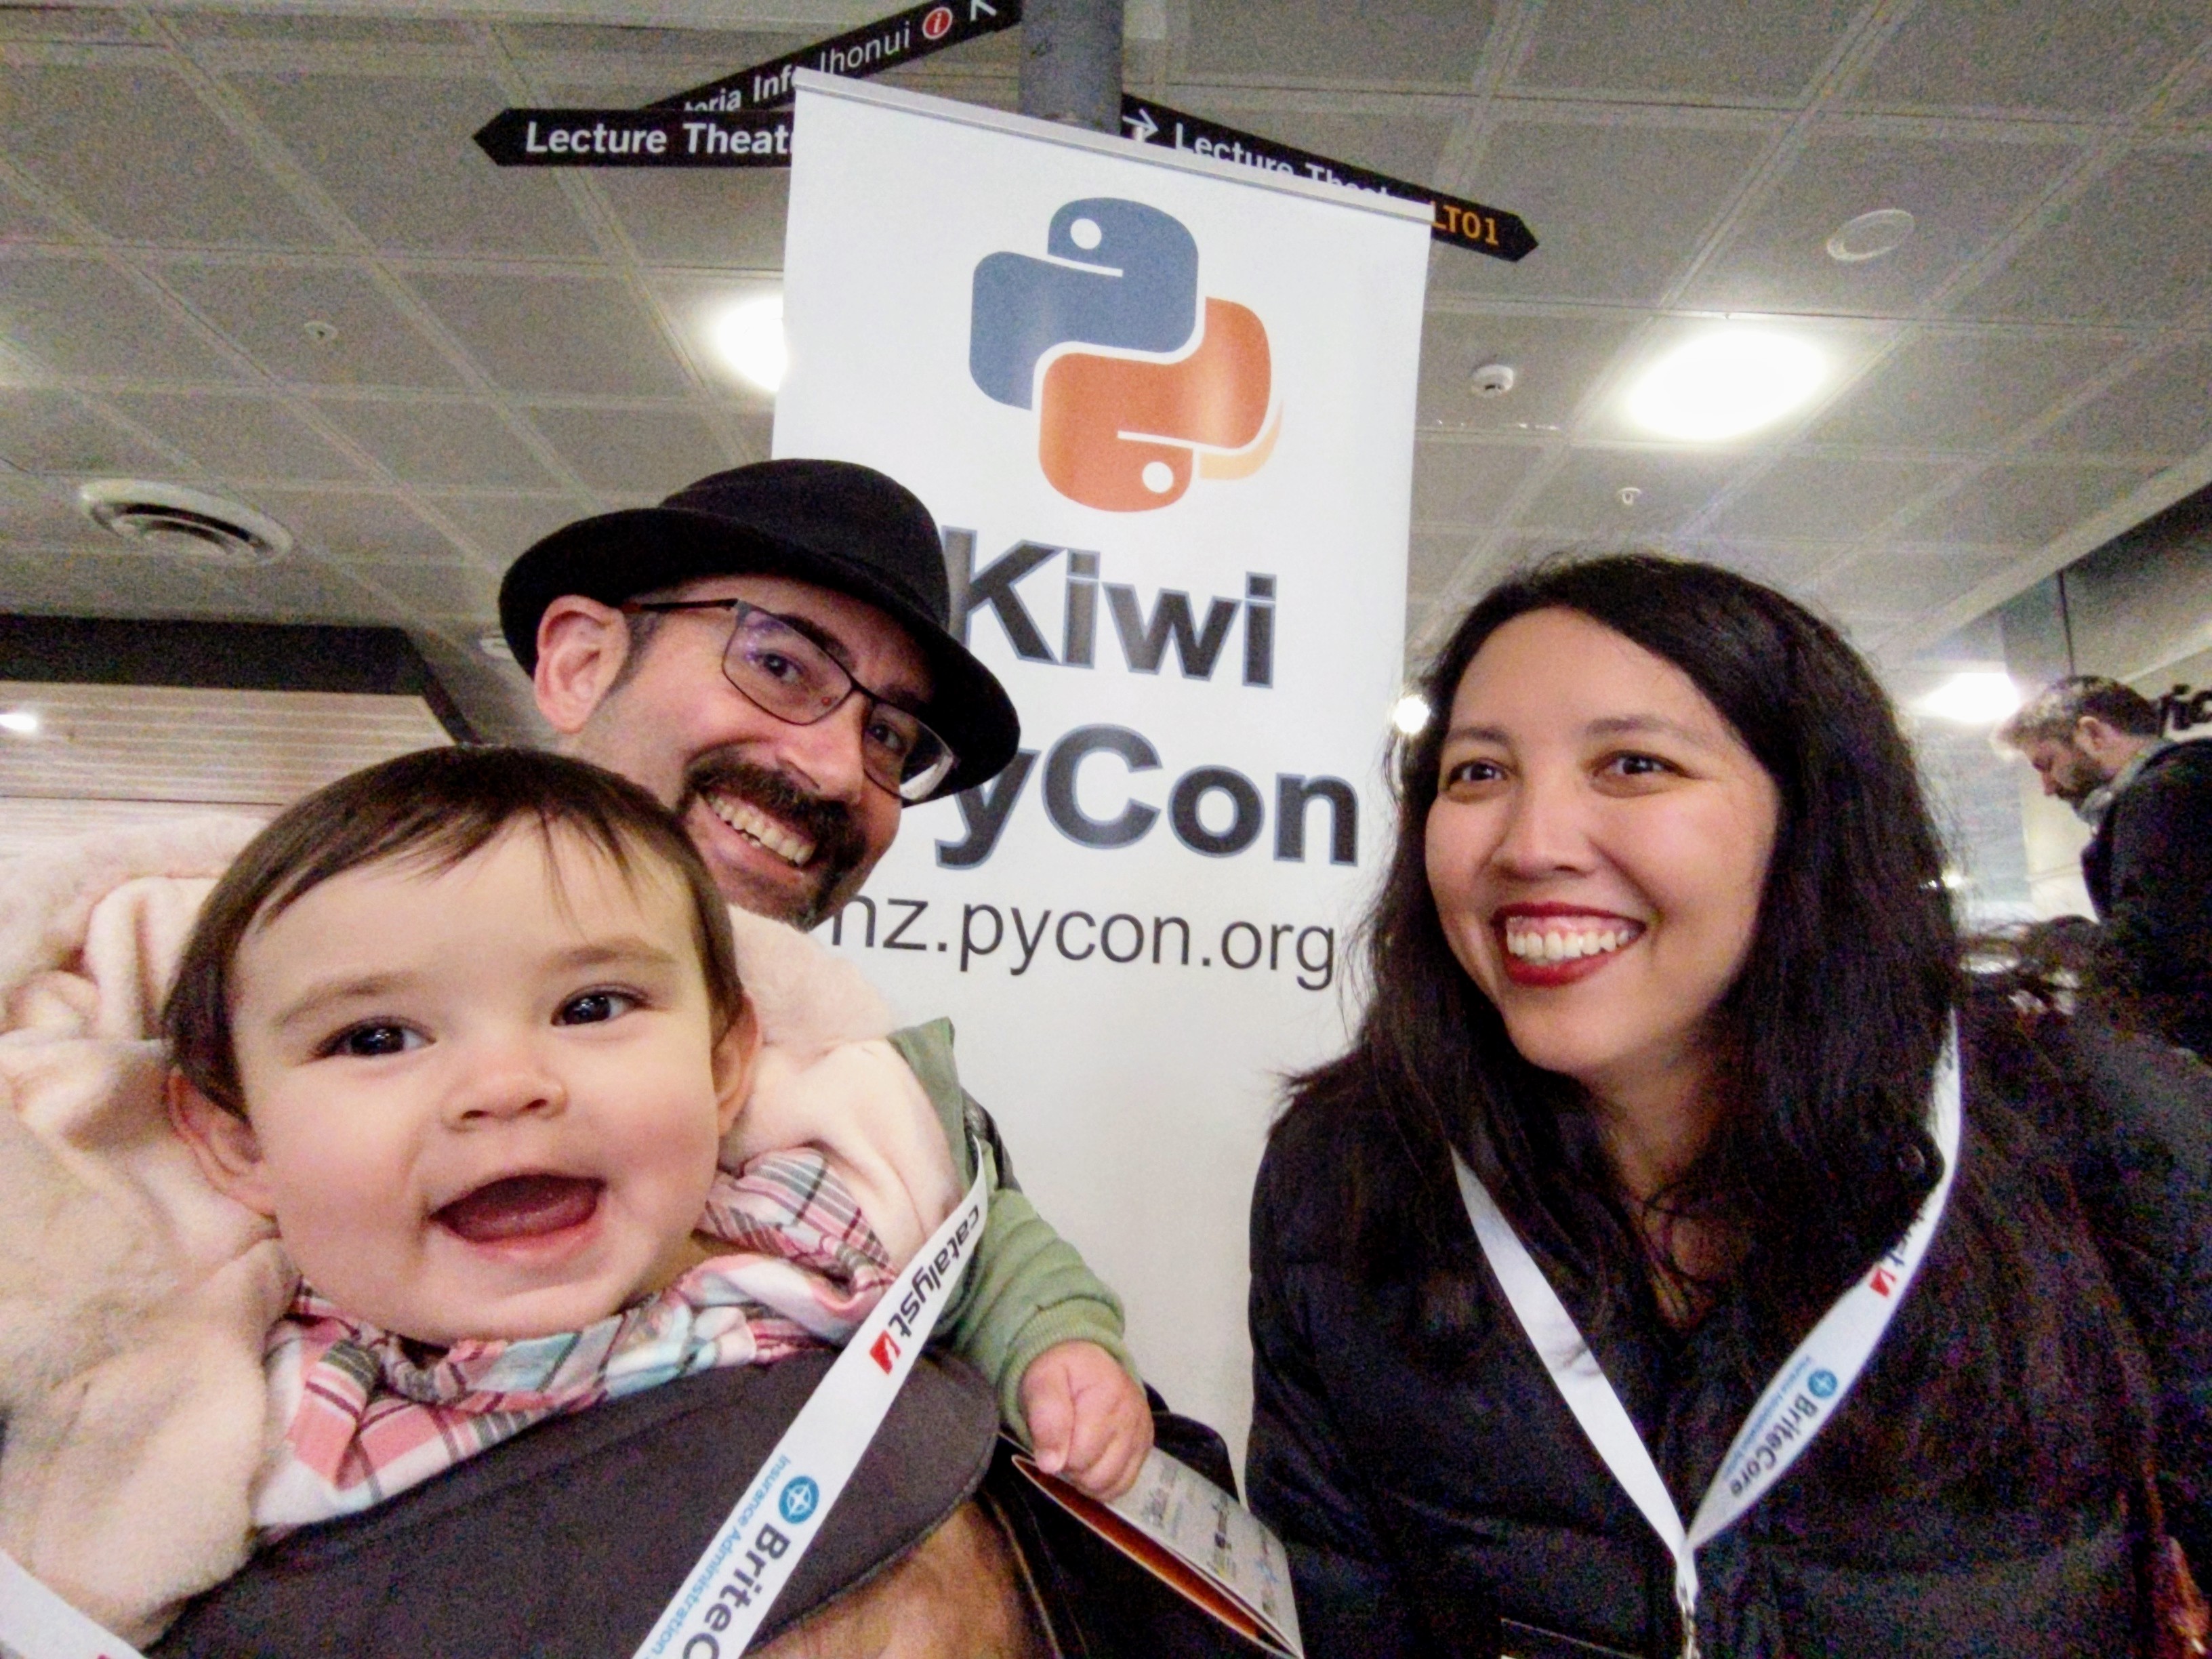 Kiwi PyCon family photo!